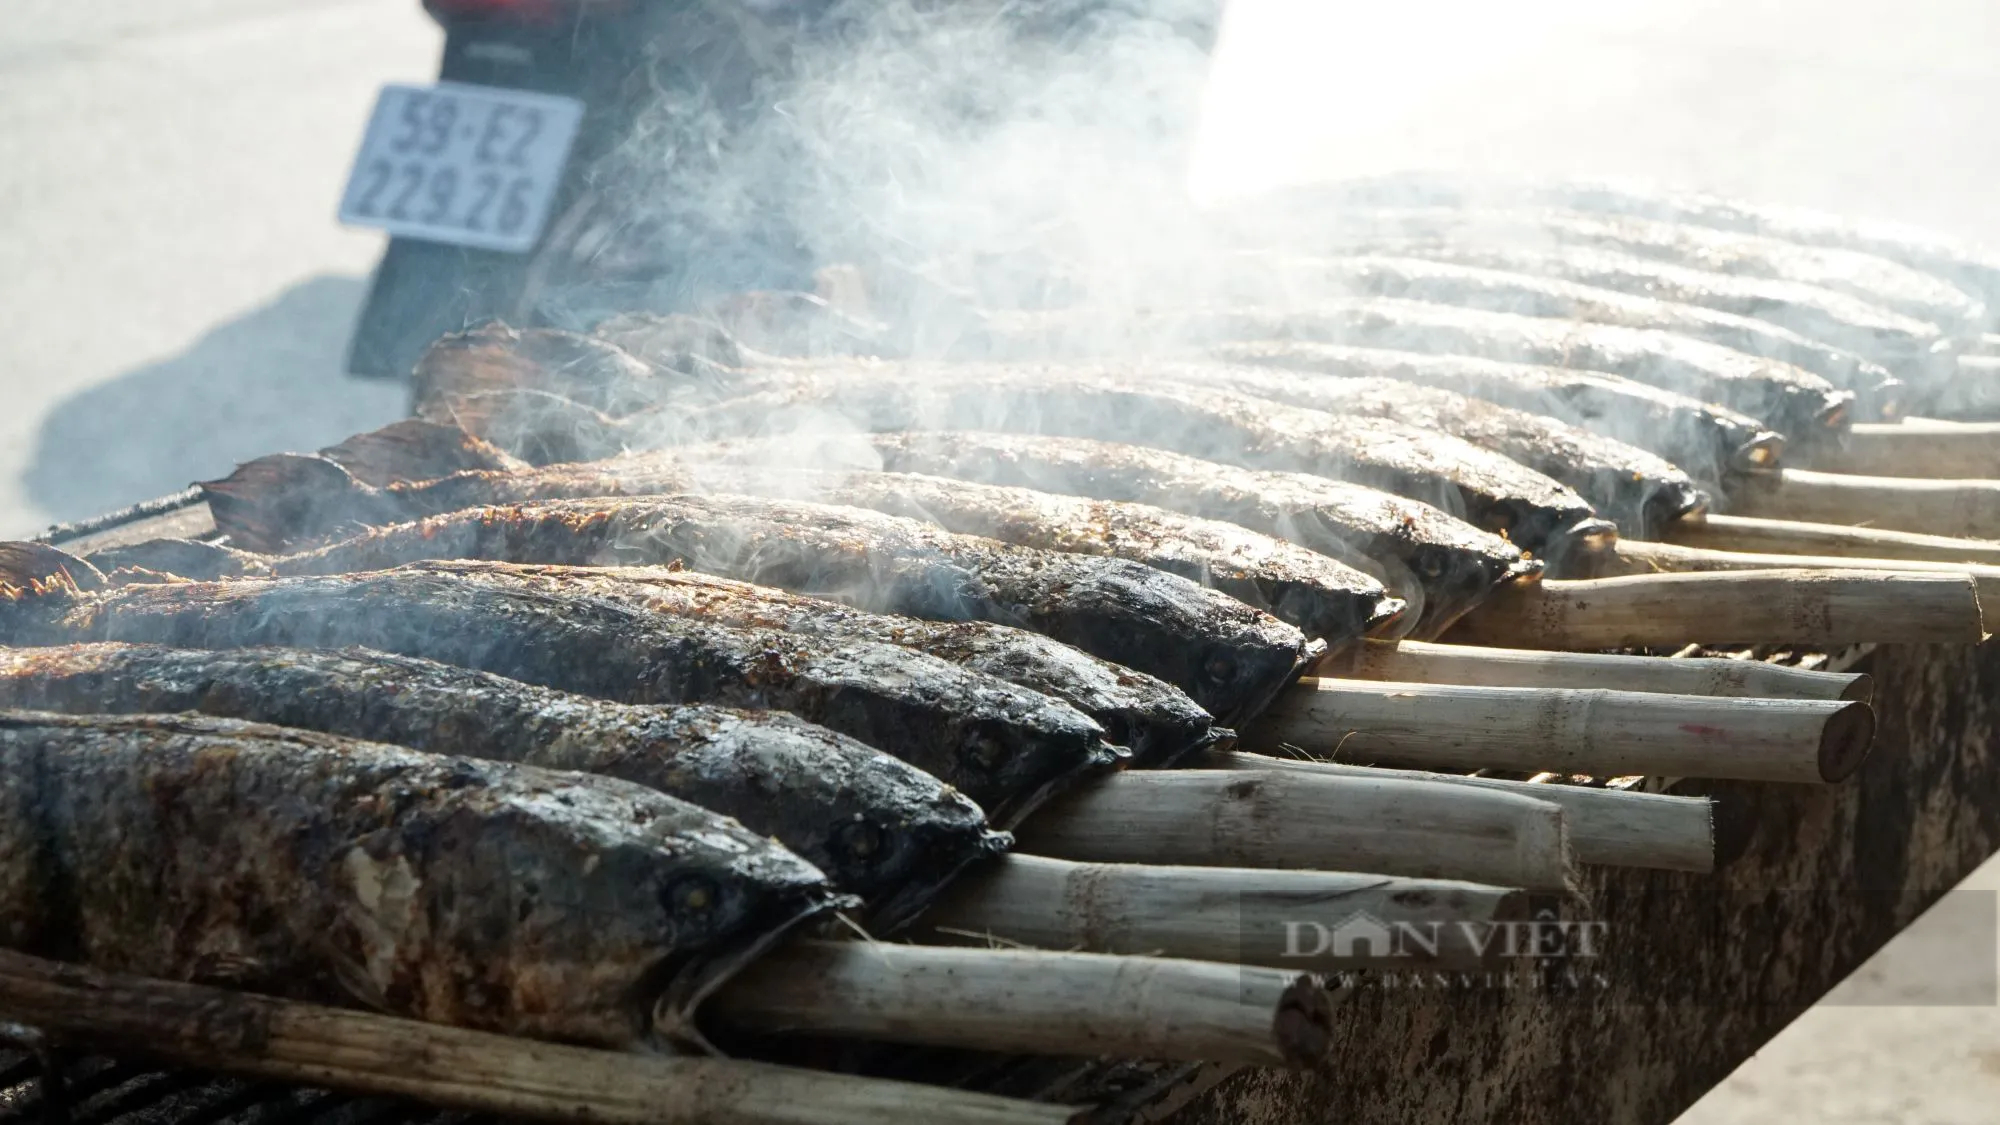 Sáng đêm nướng cá lóc bán ngày vía Thần Tài ở TP.HCM, có tiệm huy động 40 người nướng hàng tấn cá- Ảnh 8.